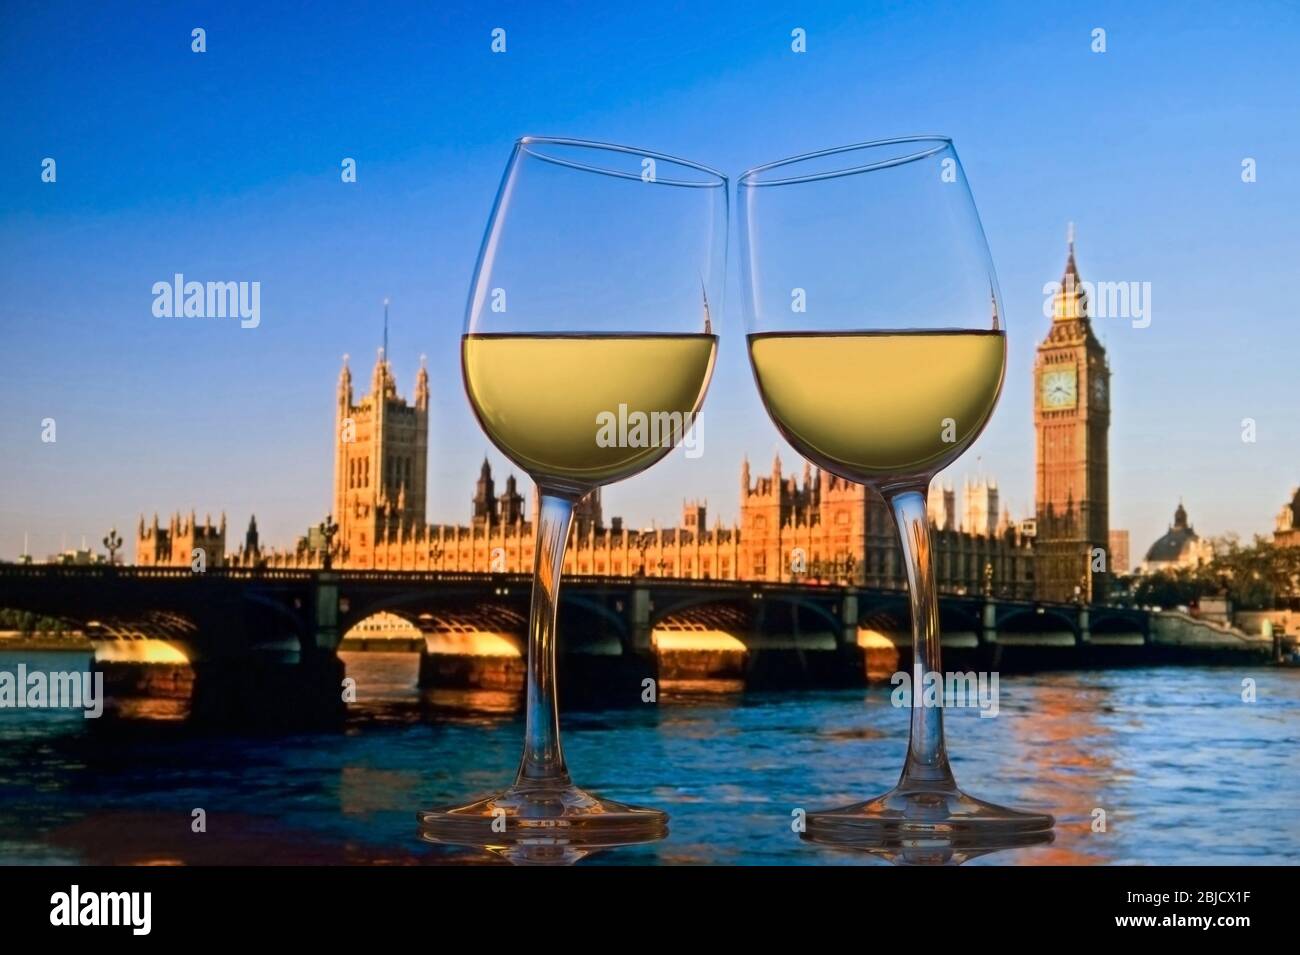 LES FÊTEURS DE LONDRES CÉLÈBRENT deux verres à vin blanc se penchent les uns vers les autres dans les « ENCOURAGEMENTS » avec les Chambres du Parlement, la Tamise et le pont Westminster derrière Londres UK » Banque D'Images